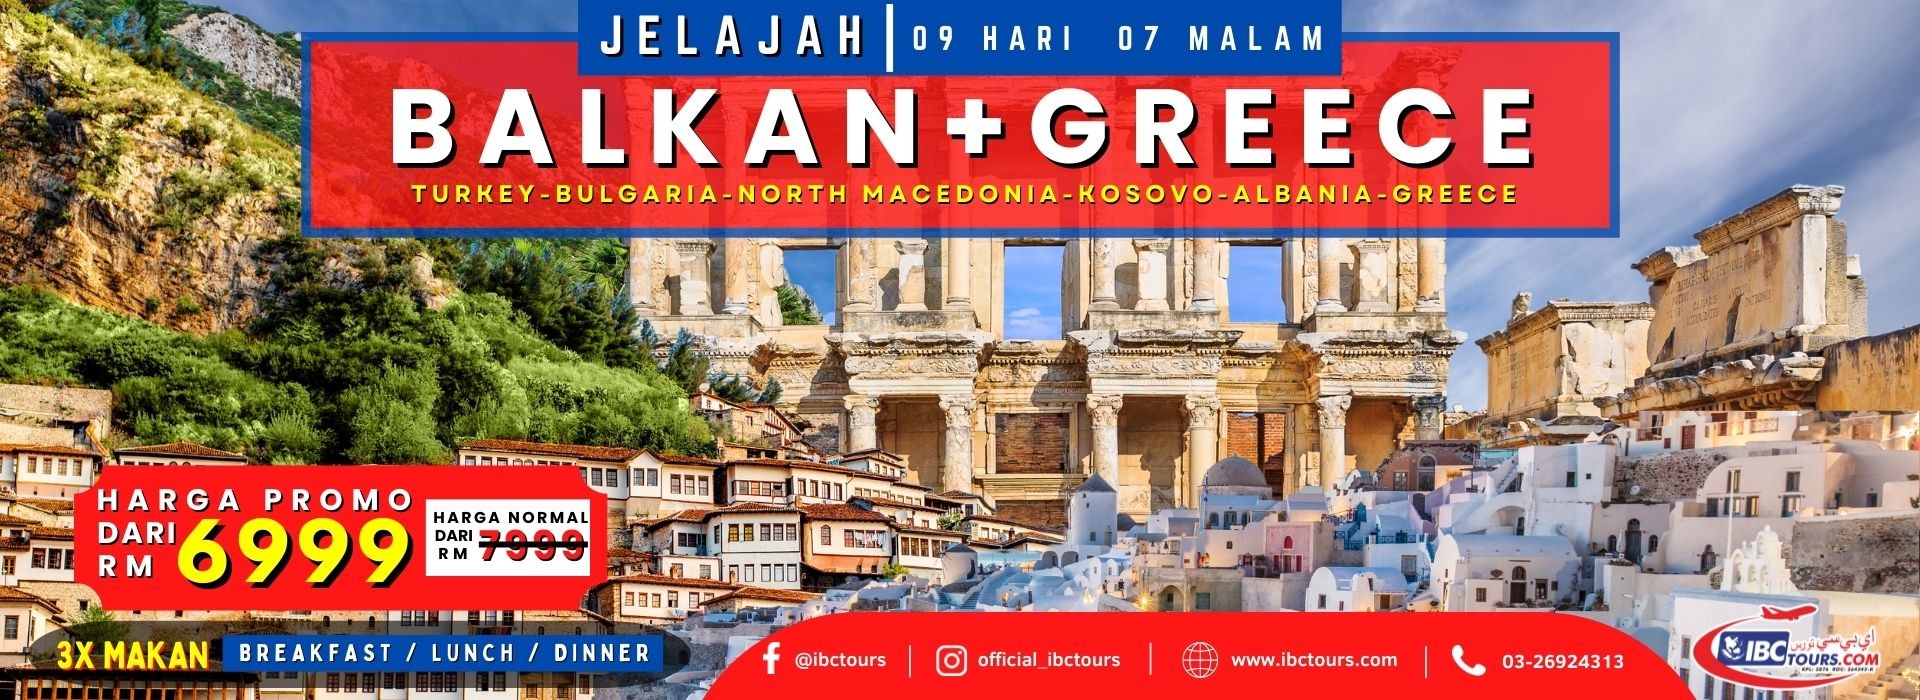 Jelajah Balkan&Greece